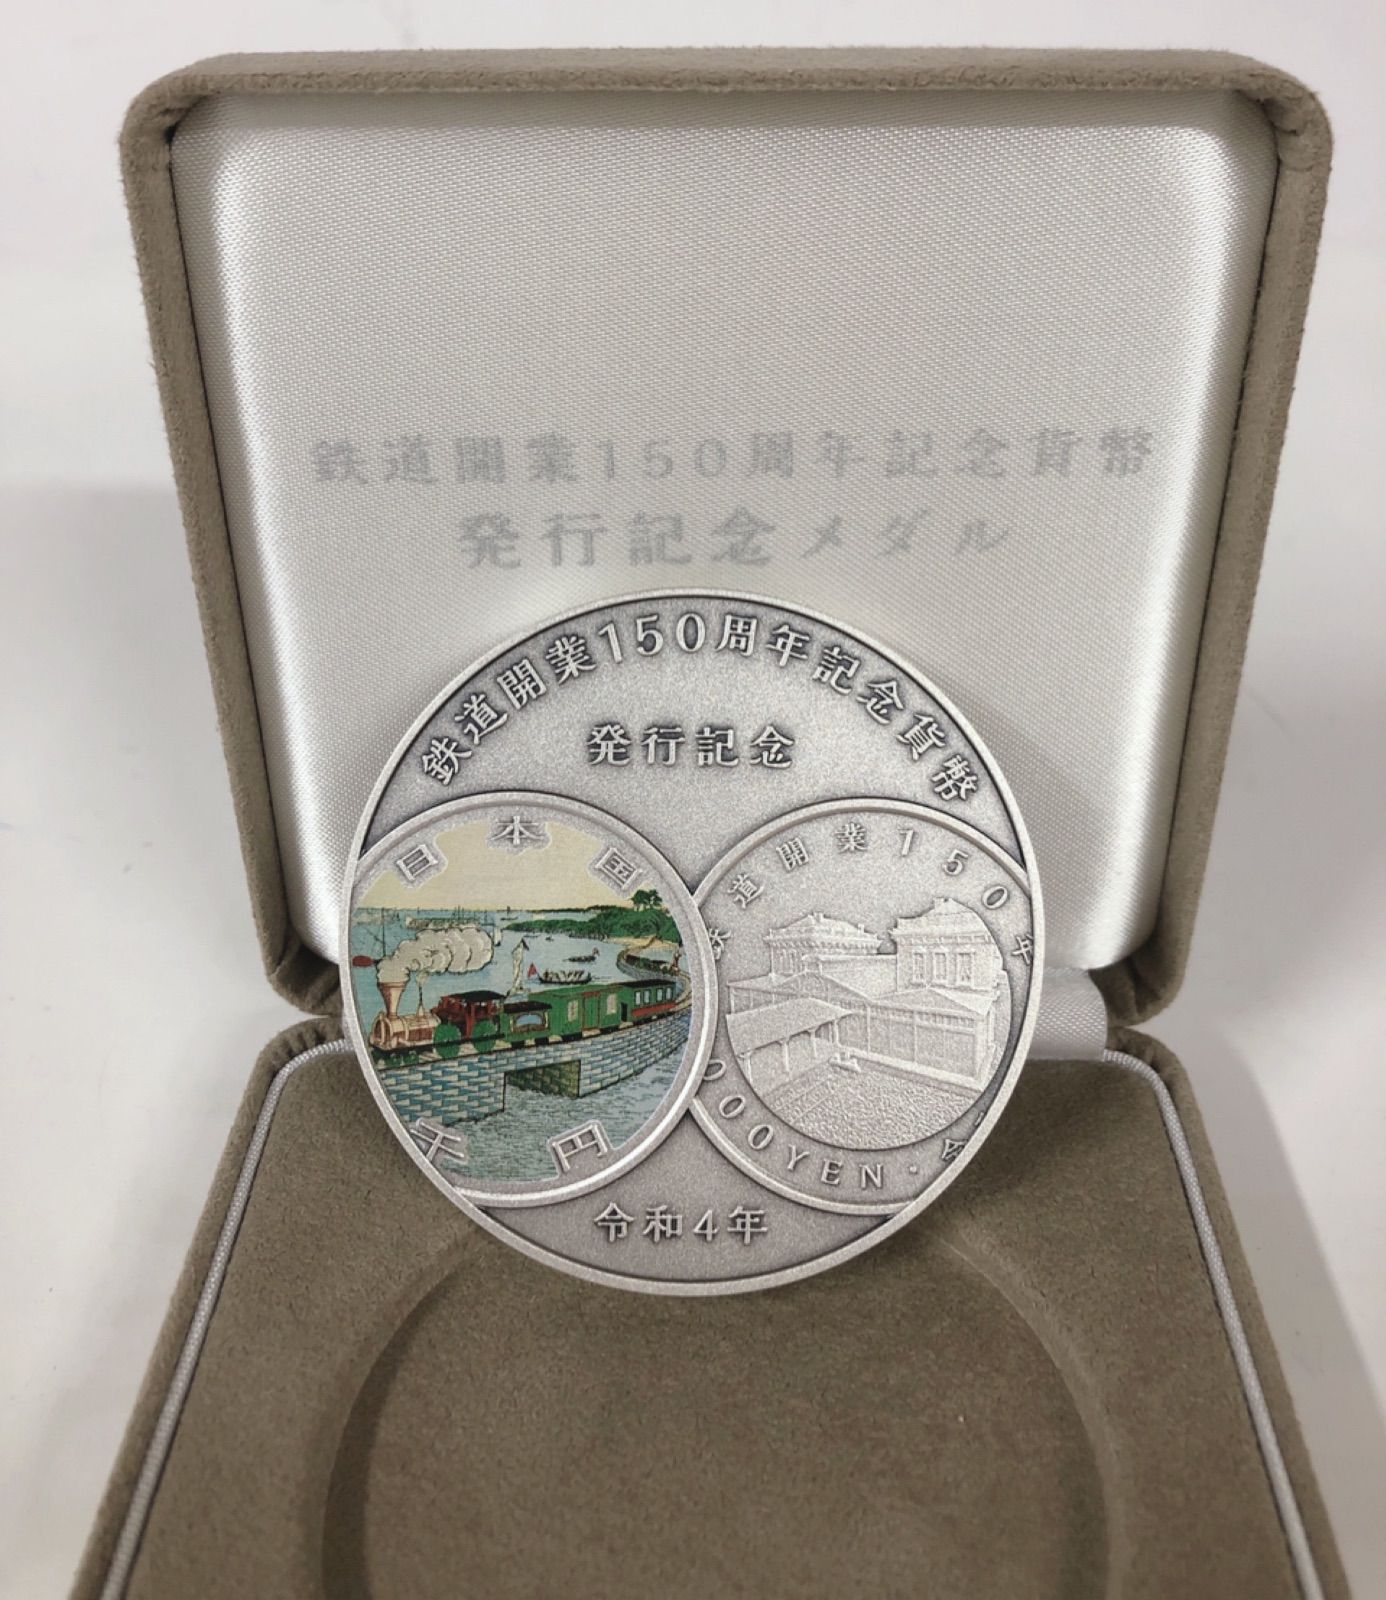 鉄道開業150周年記念貨幣発行記念メダル | www.gamutgallerympls.com